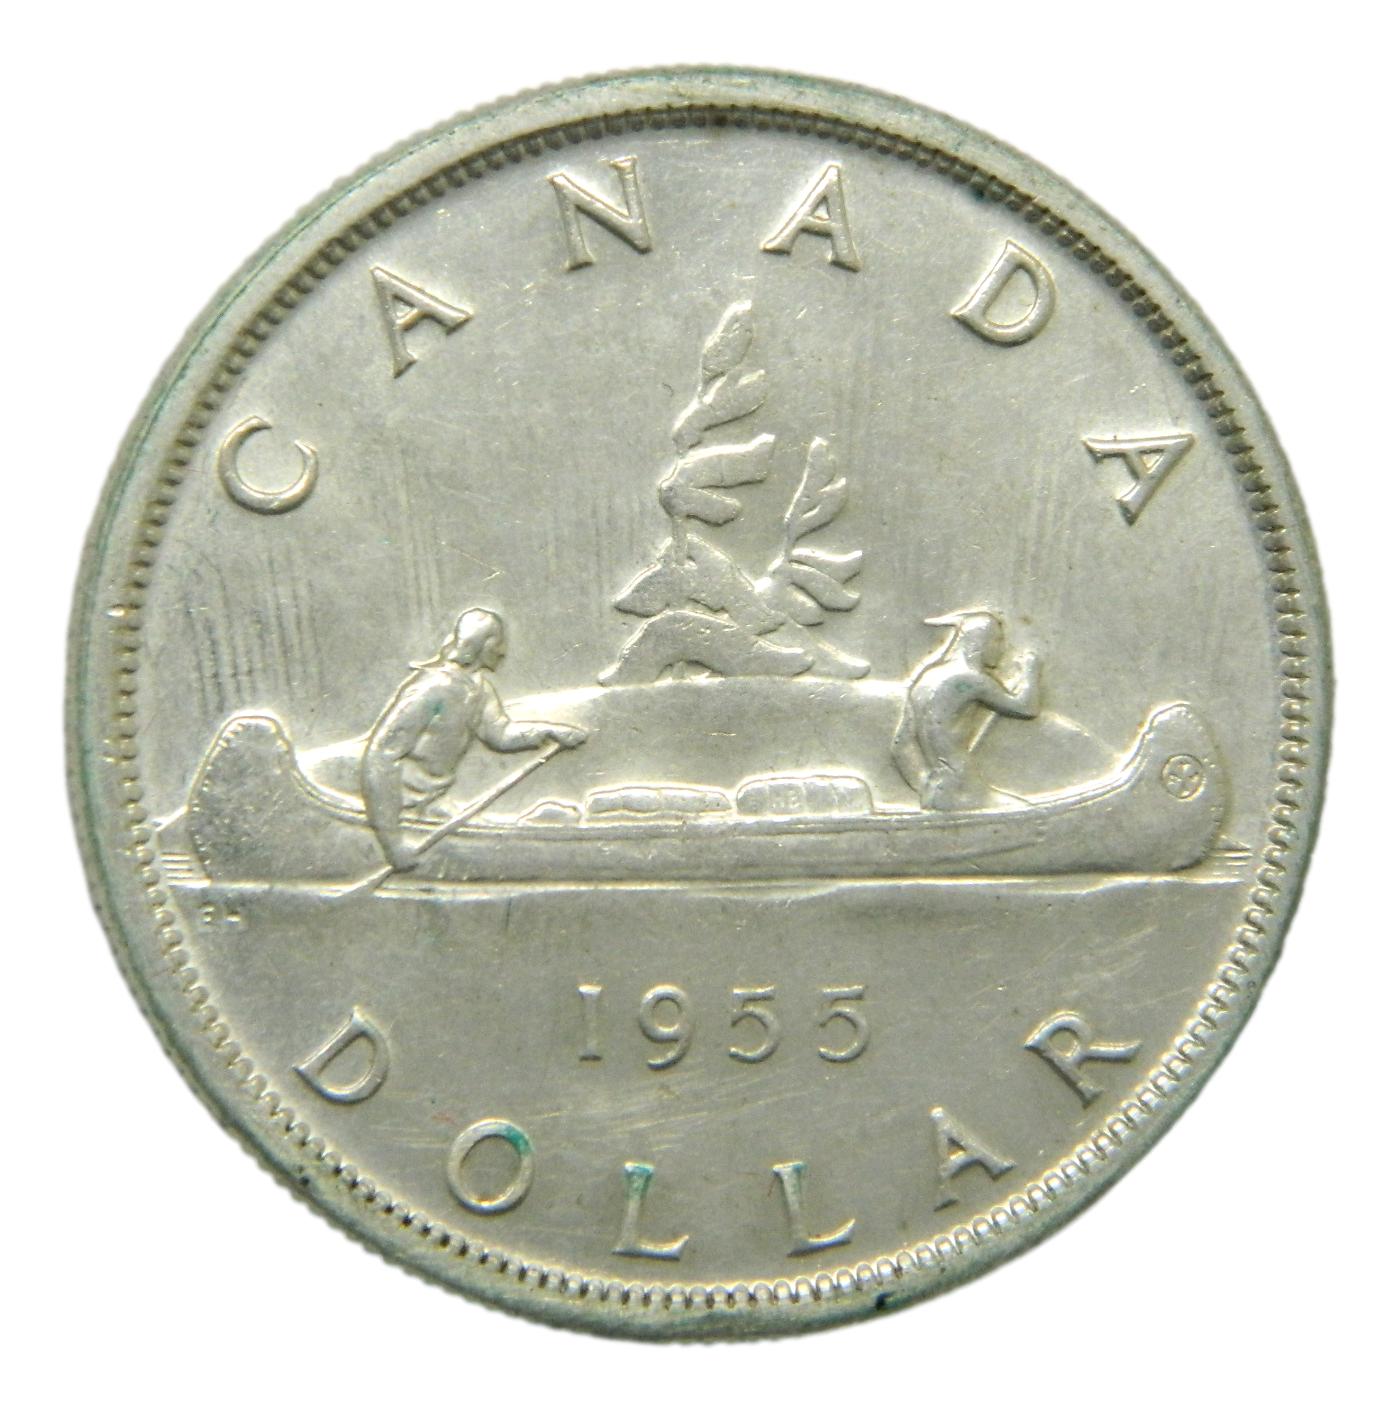 1955 - CANADA - DOLLAR - ELIZABETH II - PLATA